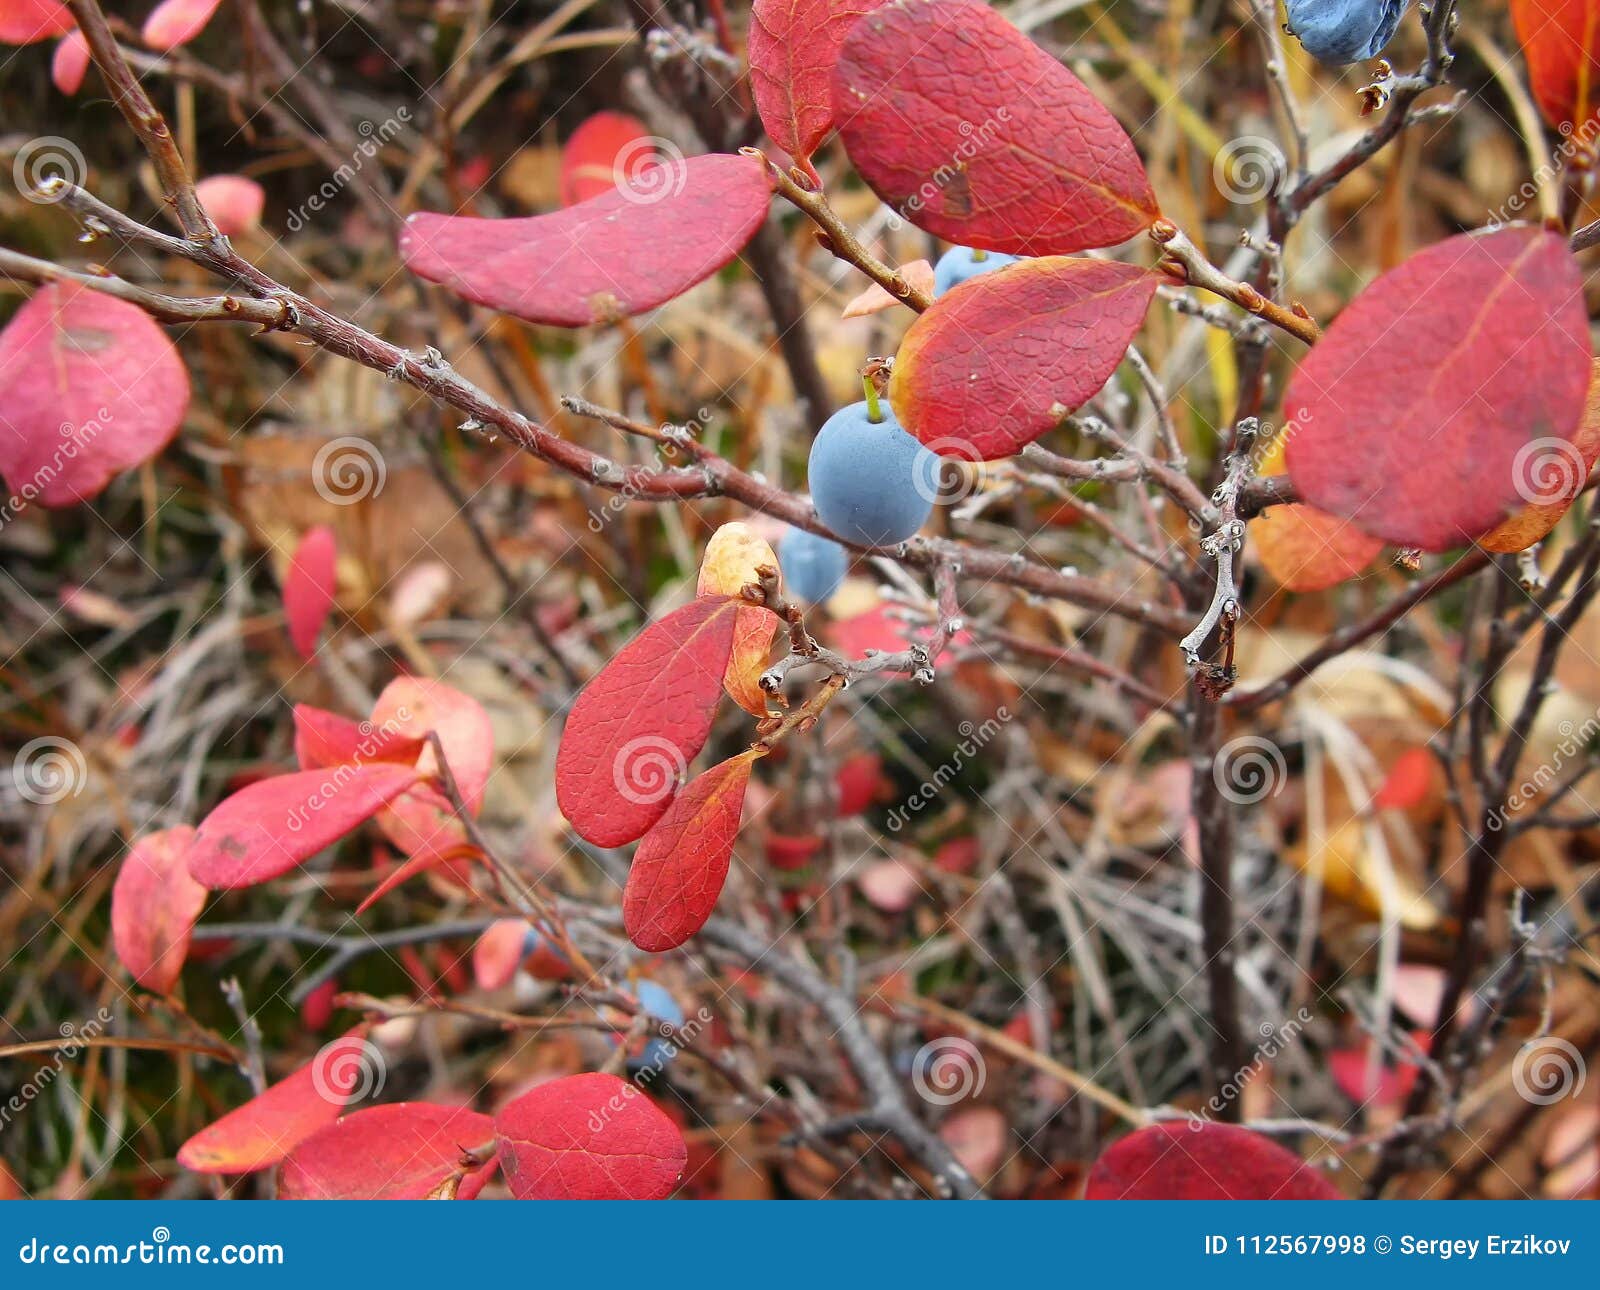 Краснеет голубика. Голубика Садовая красная листва. Голубика с красными листьями осенью. Красные листья у голубики. Осенняя окраска листьев голубики.